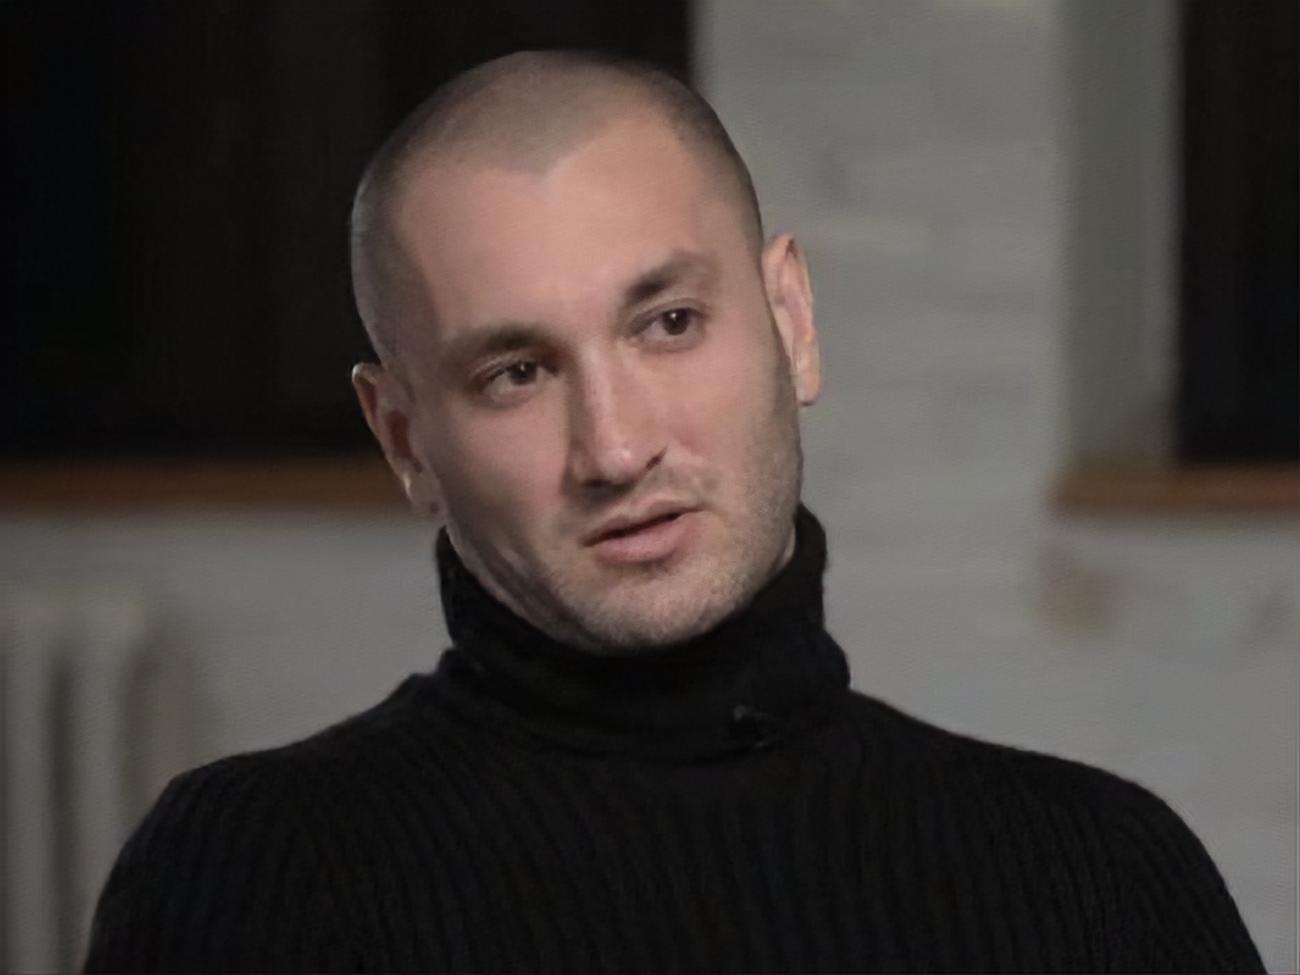 Бардаш загремел в базу "Миротворец" за скандальные заявления о Донбассе в интервью Дудю